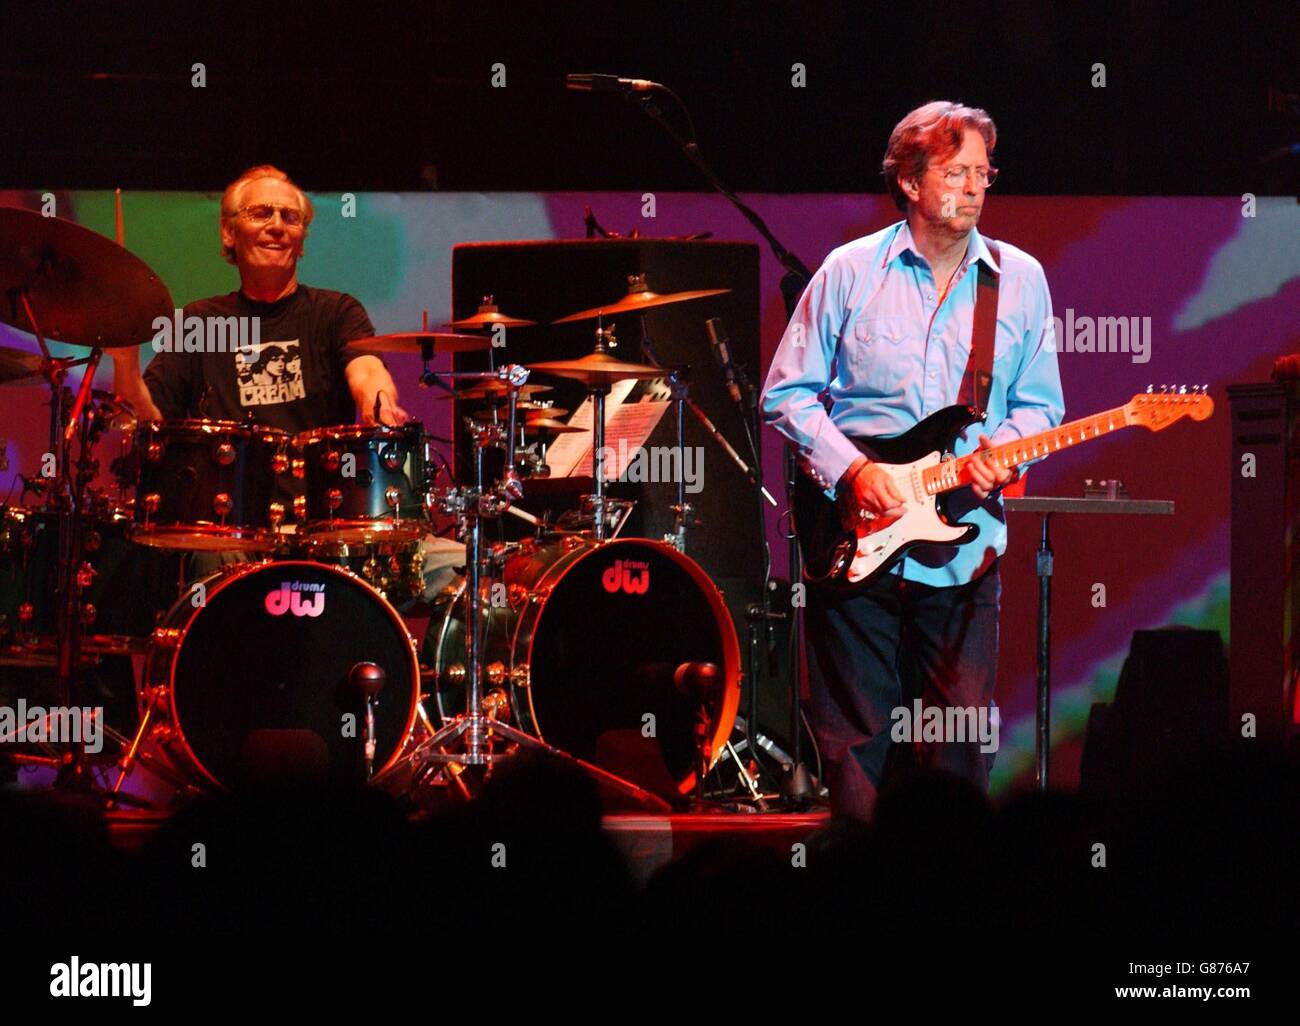 Concert de réunion de Cream - Royal Albert Hall.Batteur Ginger Baker (à gauche) et Eric Clapton of Cream. Banque D'Images